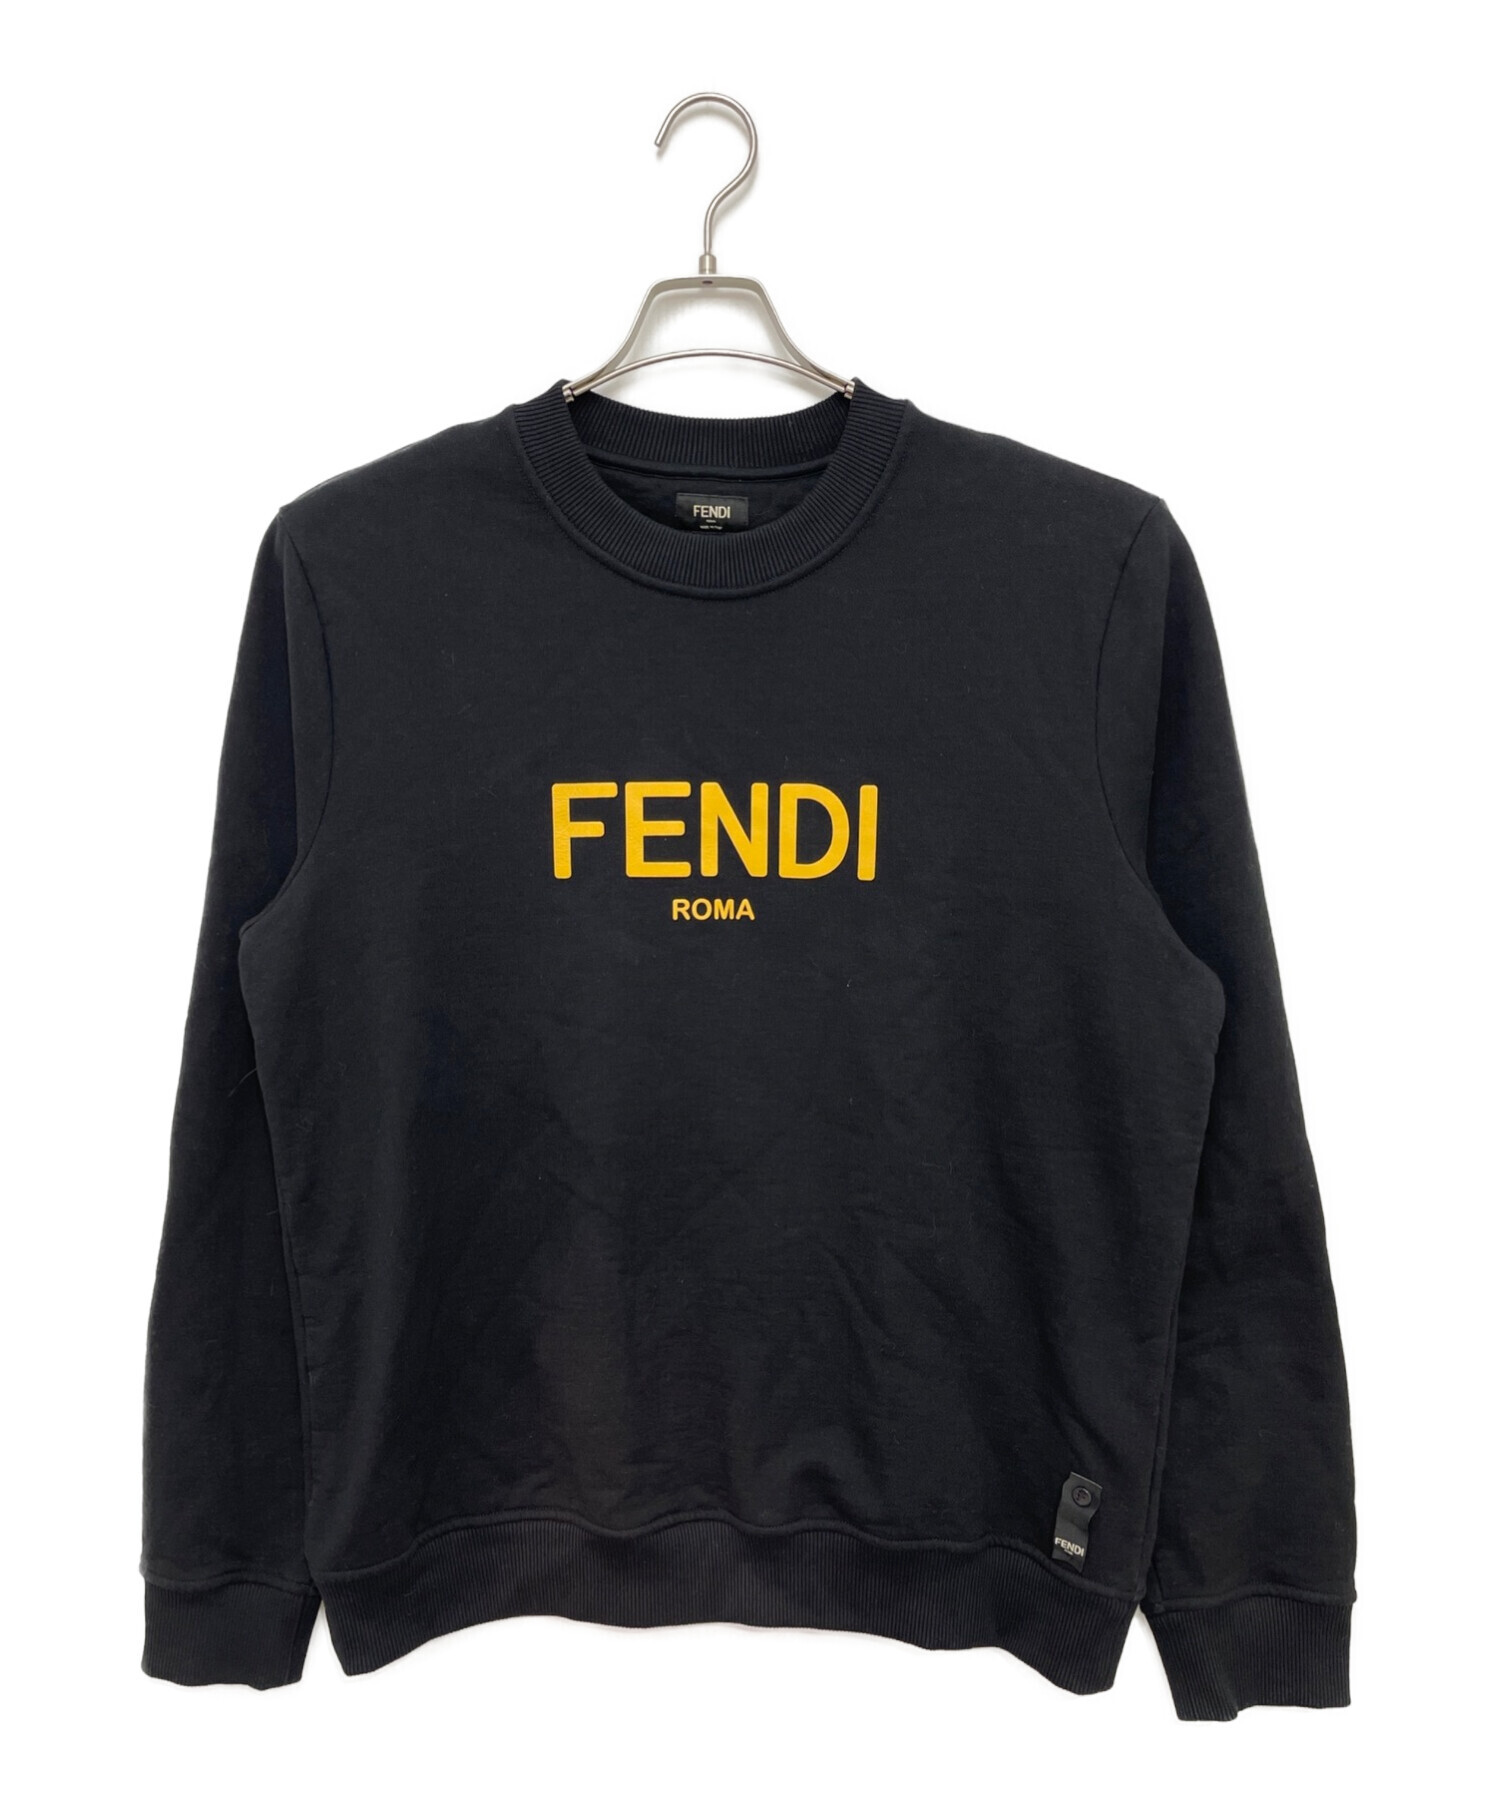 FENDI (フェンディ) ロゴスウェット ブラック サイズ:XL